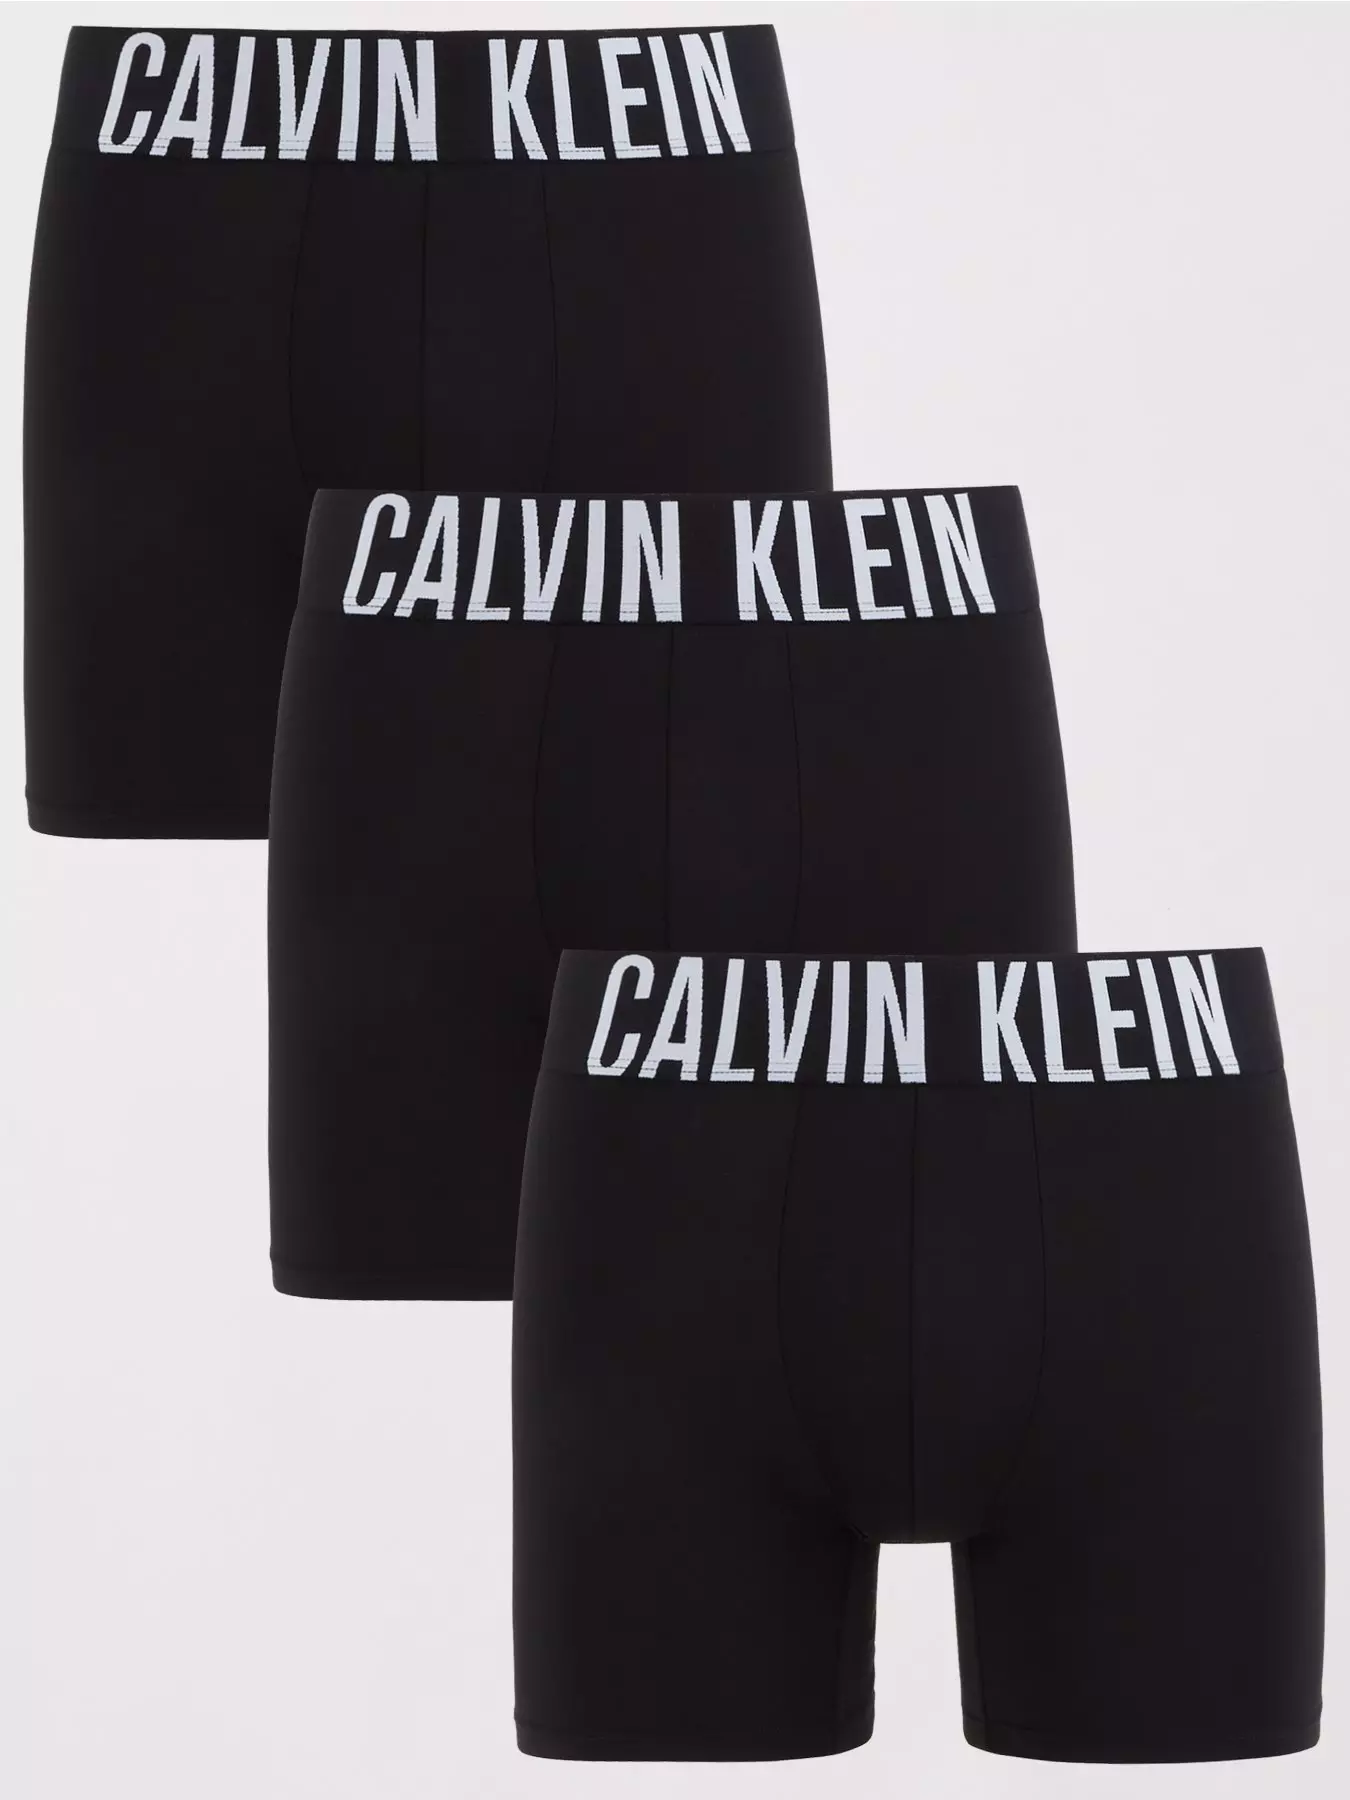 Men's Calvin Klein Underwear, CK Underwear